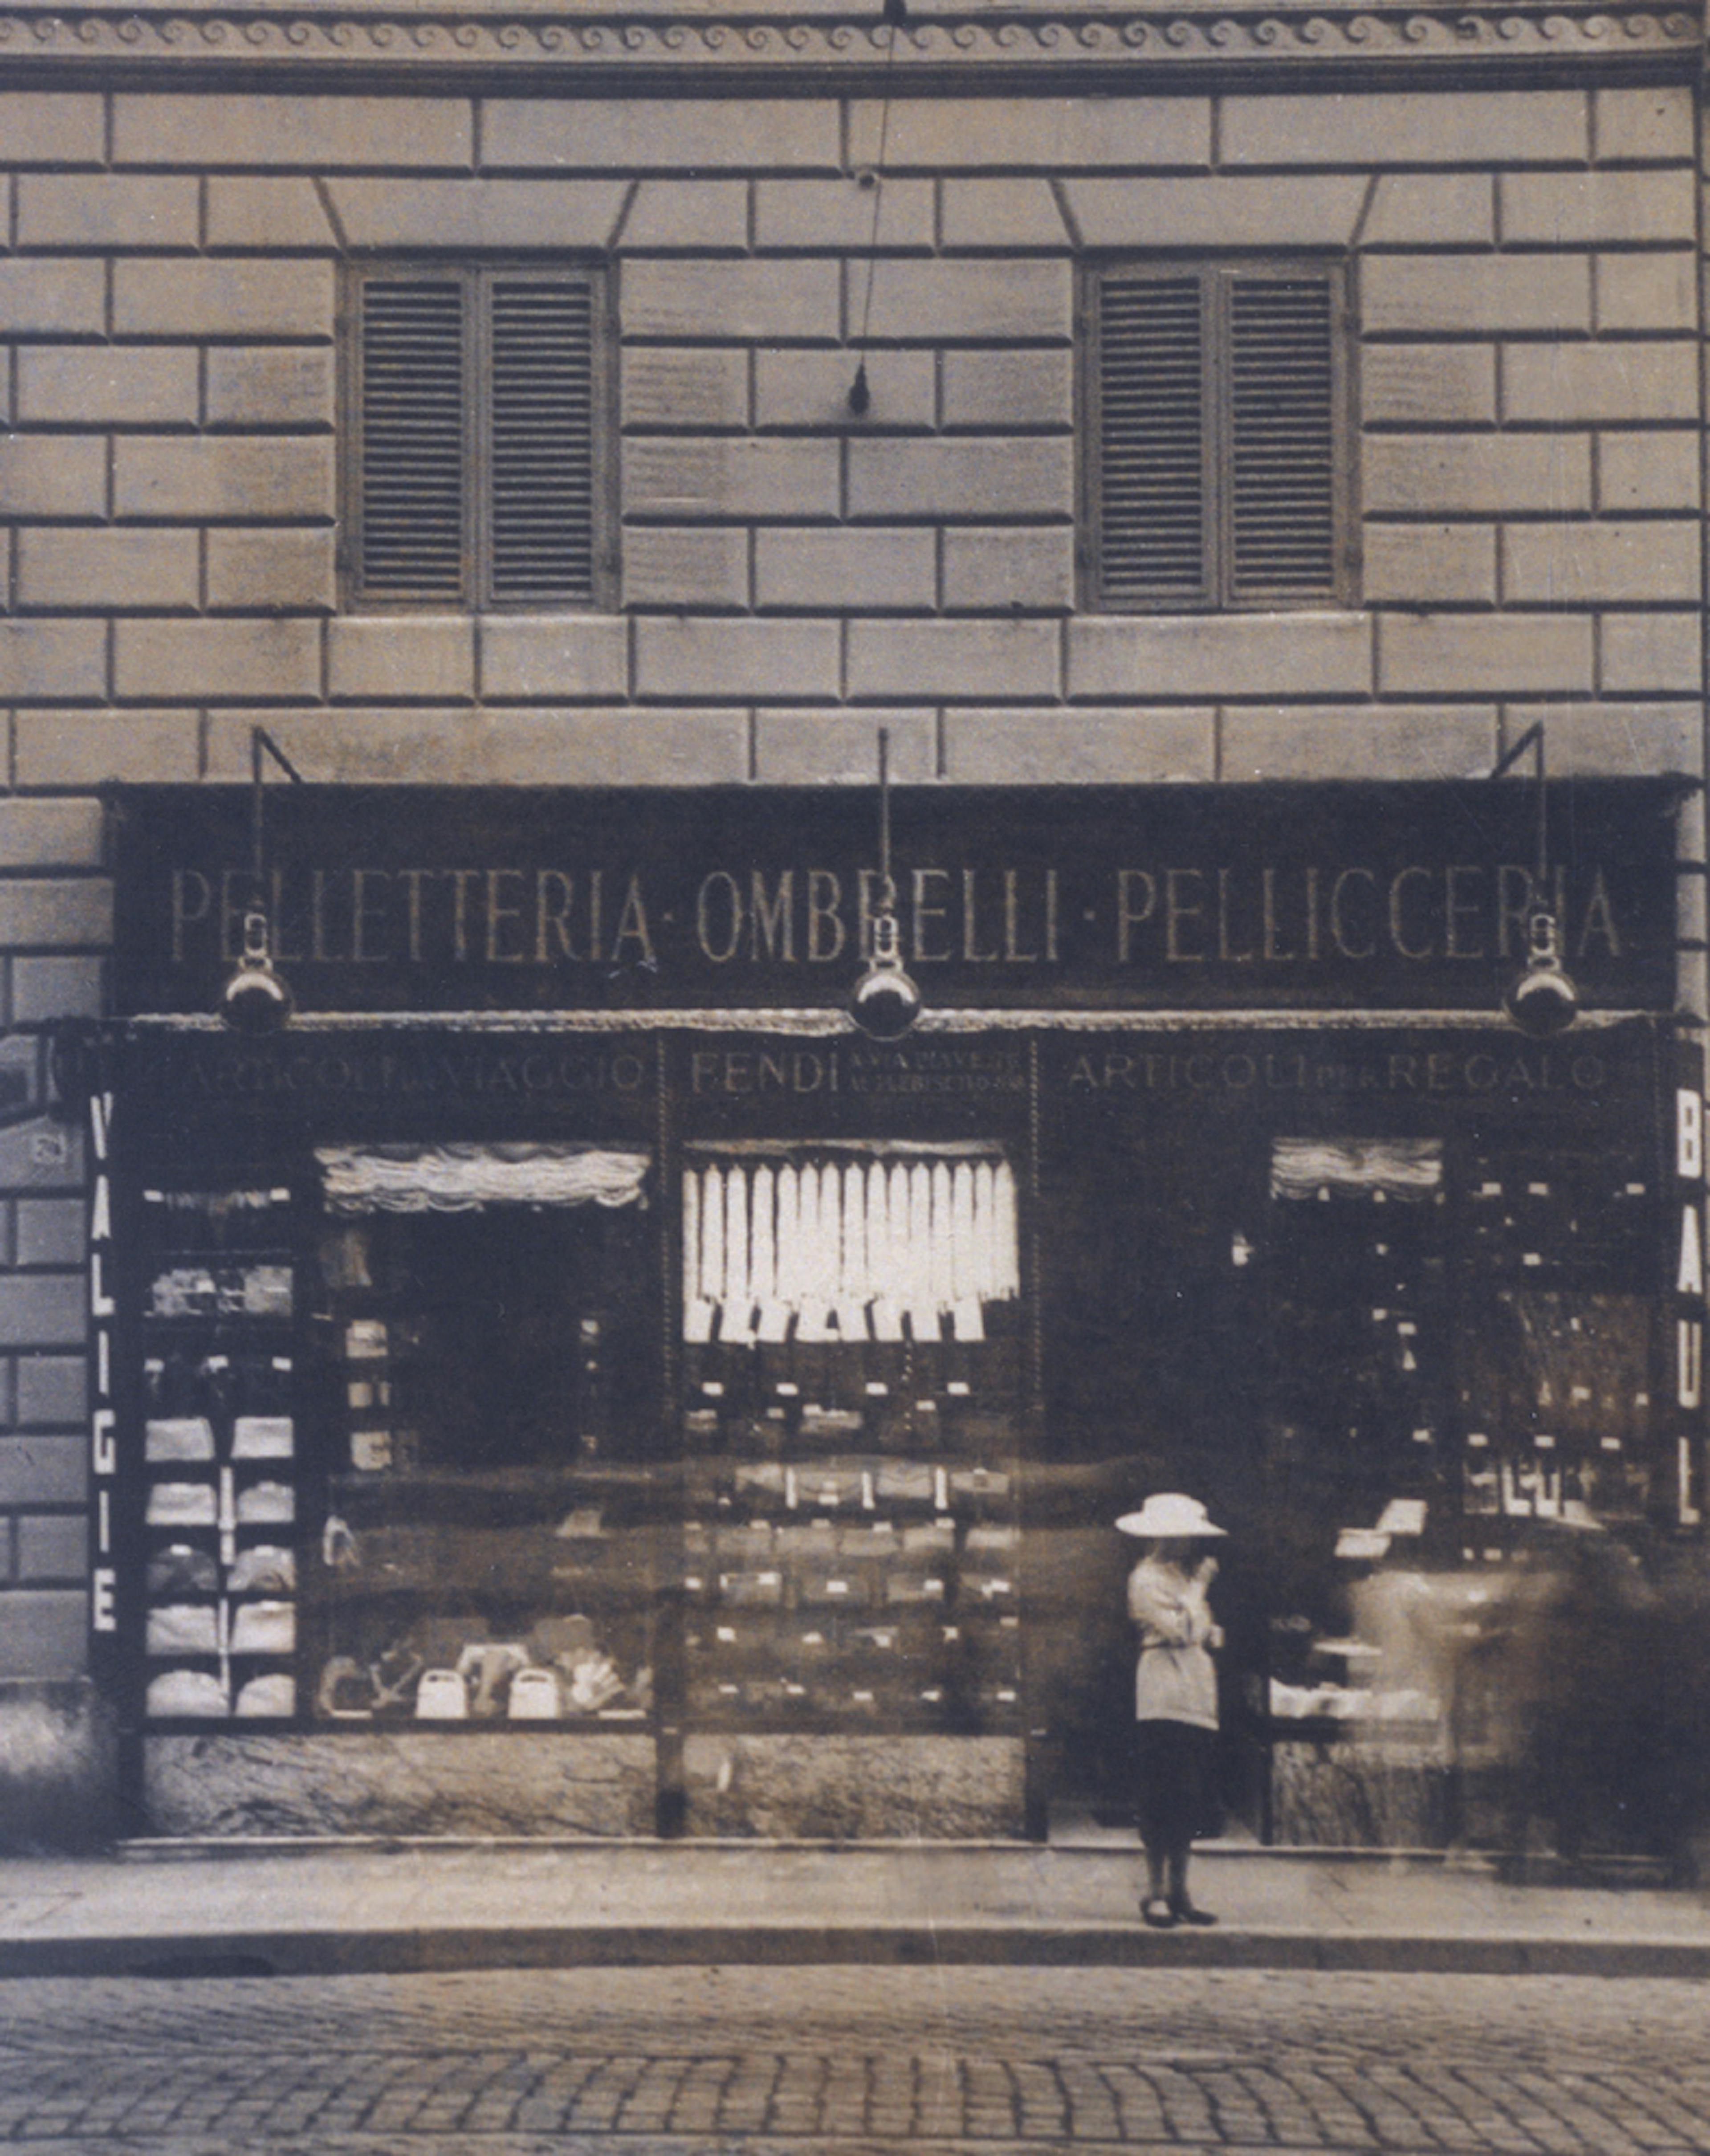 Fendi’s first boutique in Via del Plebiscito, Rome (1926) © Courtesy of Fendi